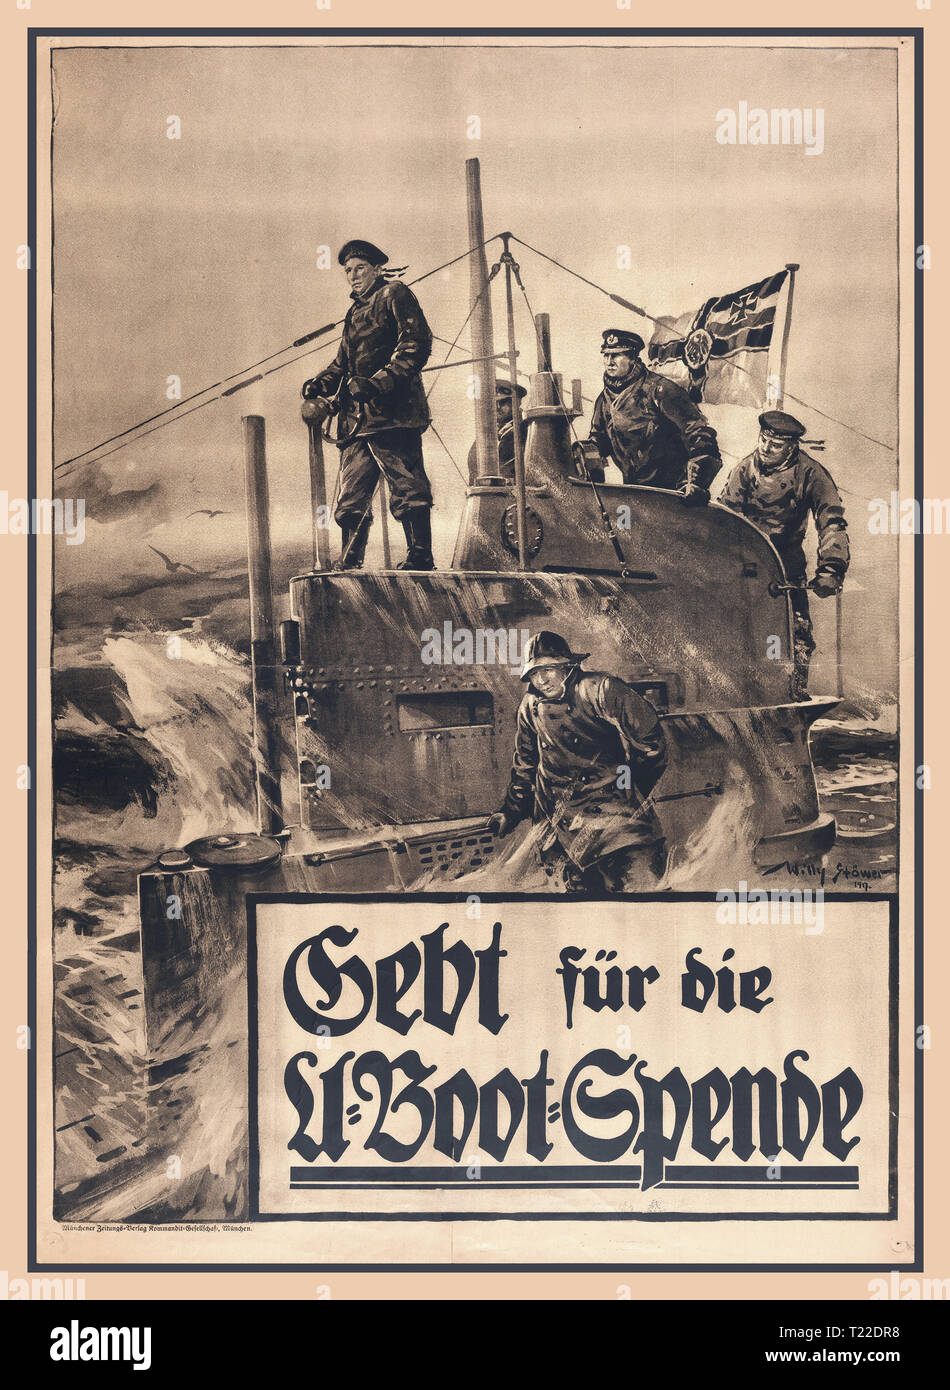 Vintage WW1 affiche allemande à appeall pour les dons d'argent des fonds sous-marins pour 1917 par l'Allemand Willy Stöwer peintre de marine. La propagande de guerre sous-marin U-Boat Marine Première Guerre mondiale l'Allemagne POUR DONNER LE SOUS-MARIN de la tourelle de don d'un sous-marin fait surface, avec cinq membres d'équipage à bord. Un Ensign naval allemand vole de la tour. "Gebt für die U-Boot Spende" Garleb Bak und G. m. b. H., Berlin [donner à l'U-boot collection.] Banque D'Images